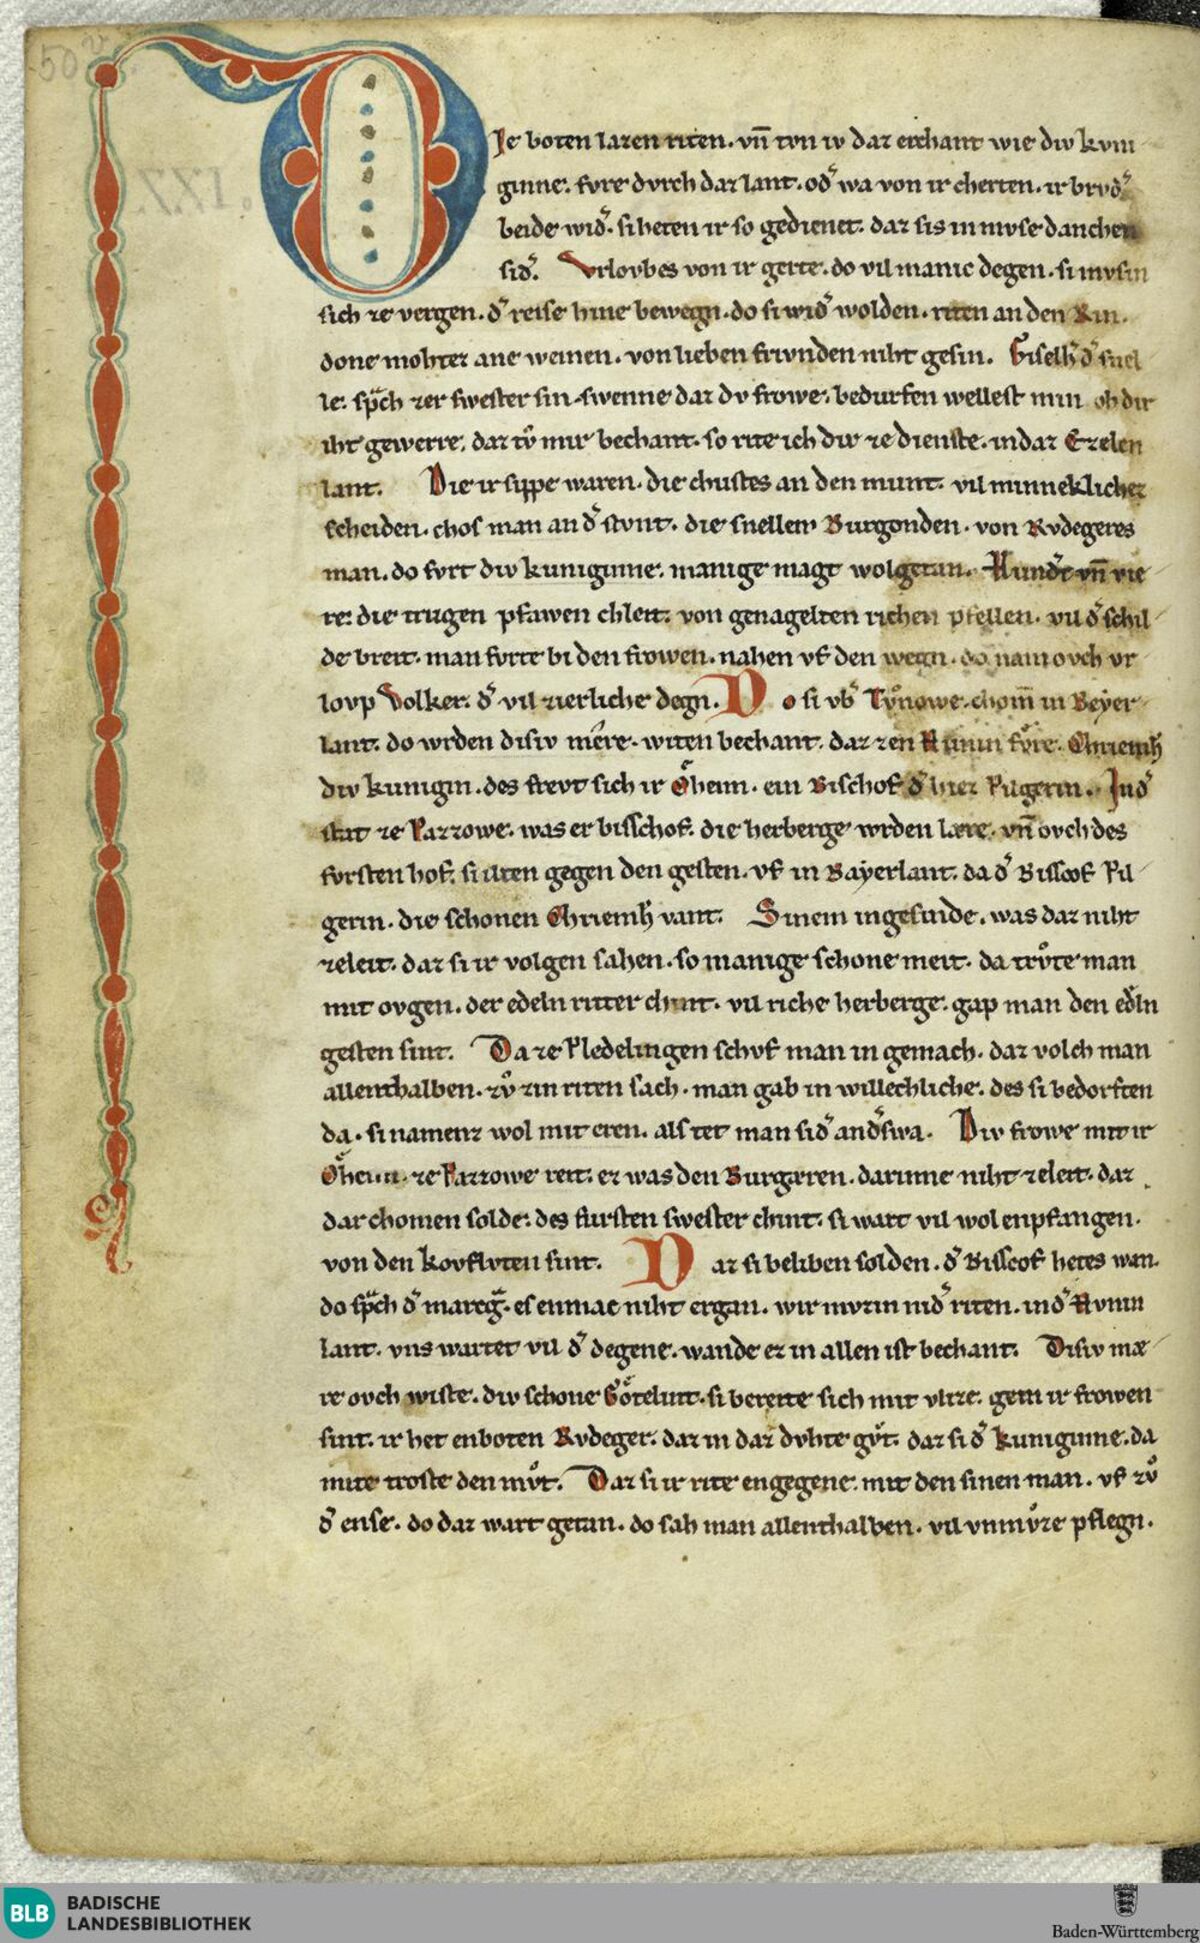 GFD 3/285: Seite mit Majuskel aus der Donaueschinger Nibelungenhandschrift aus der 1. Hälfte des 13. Jahrhunderts